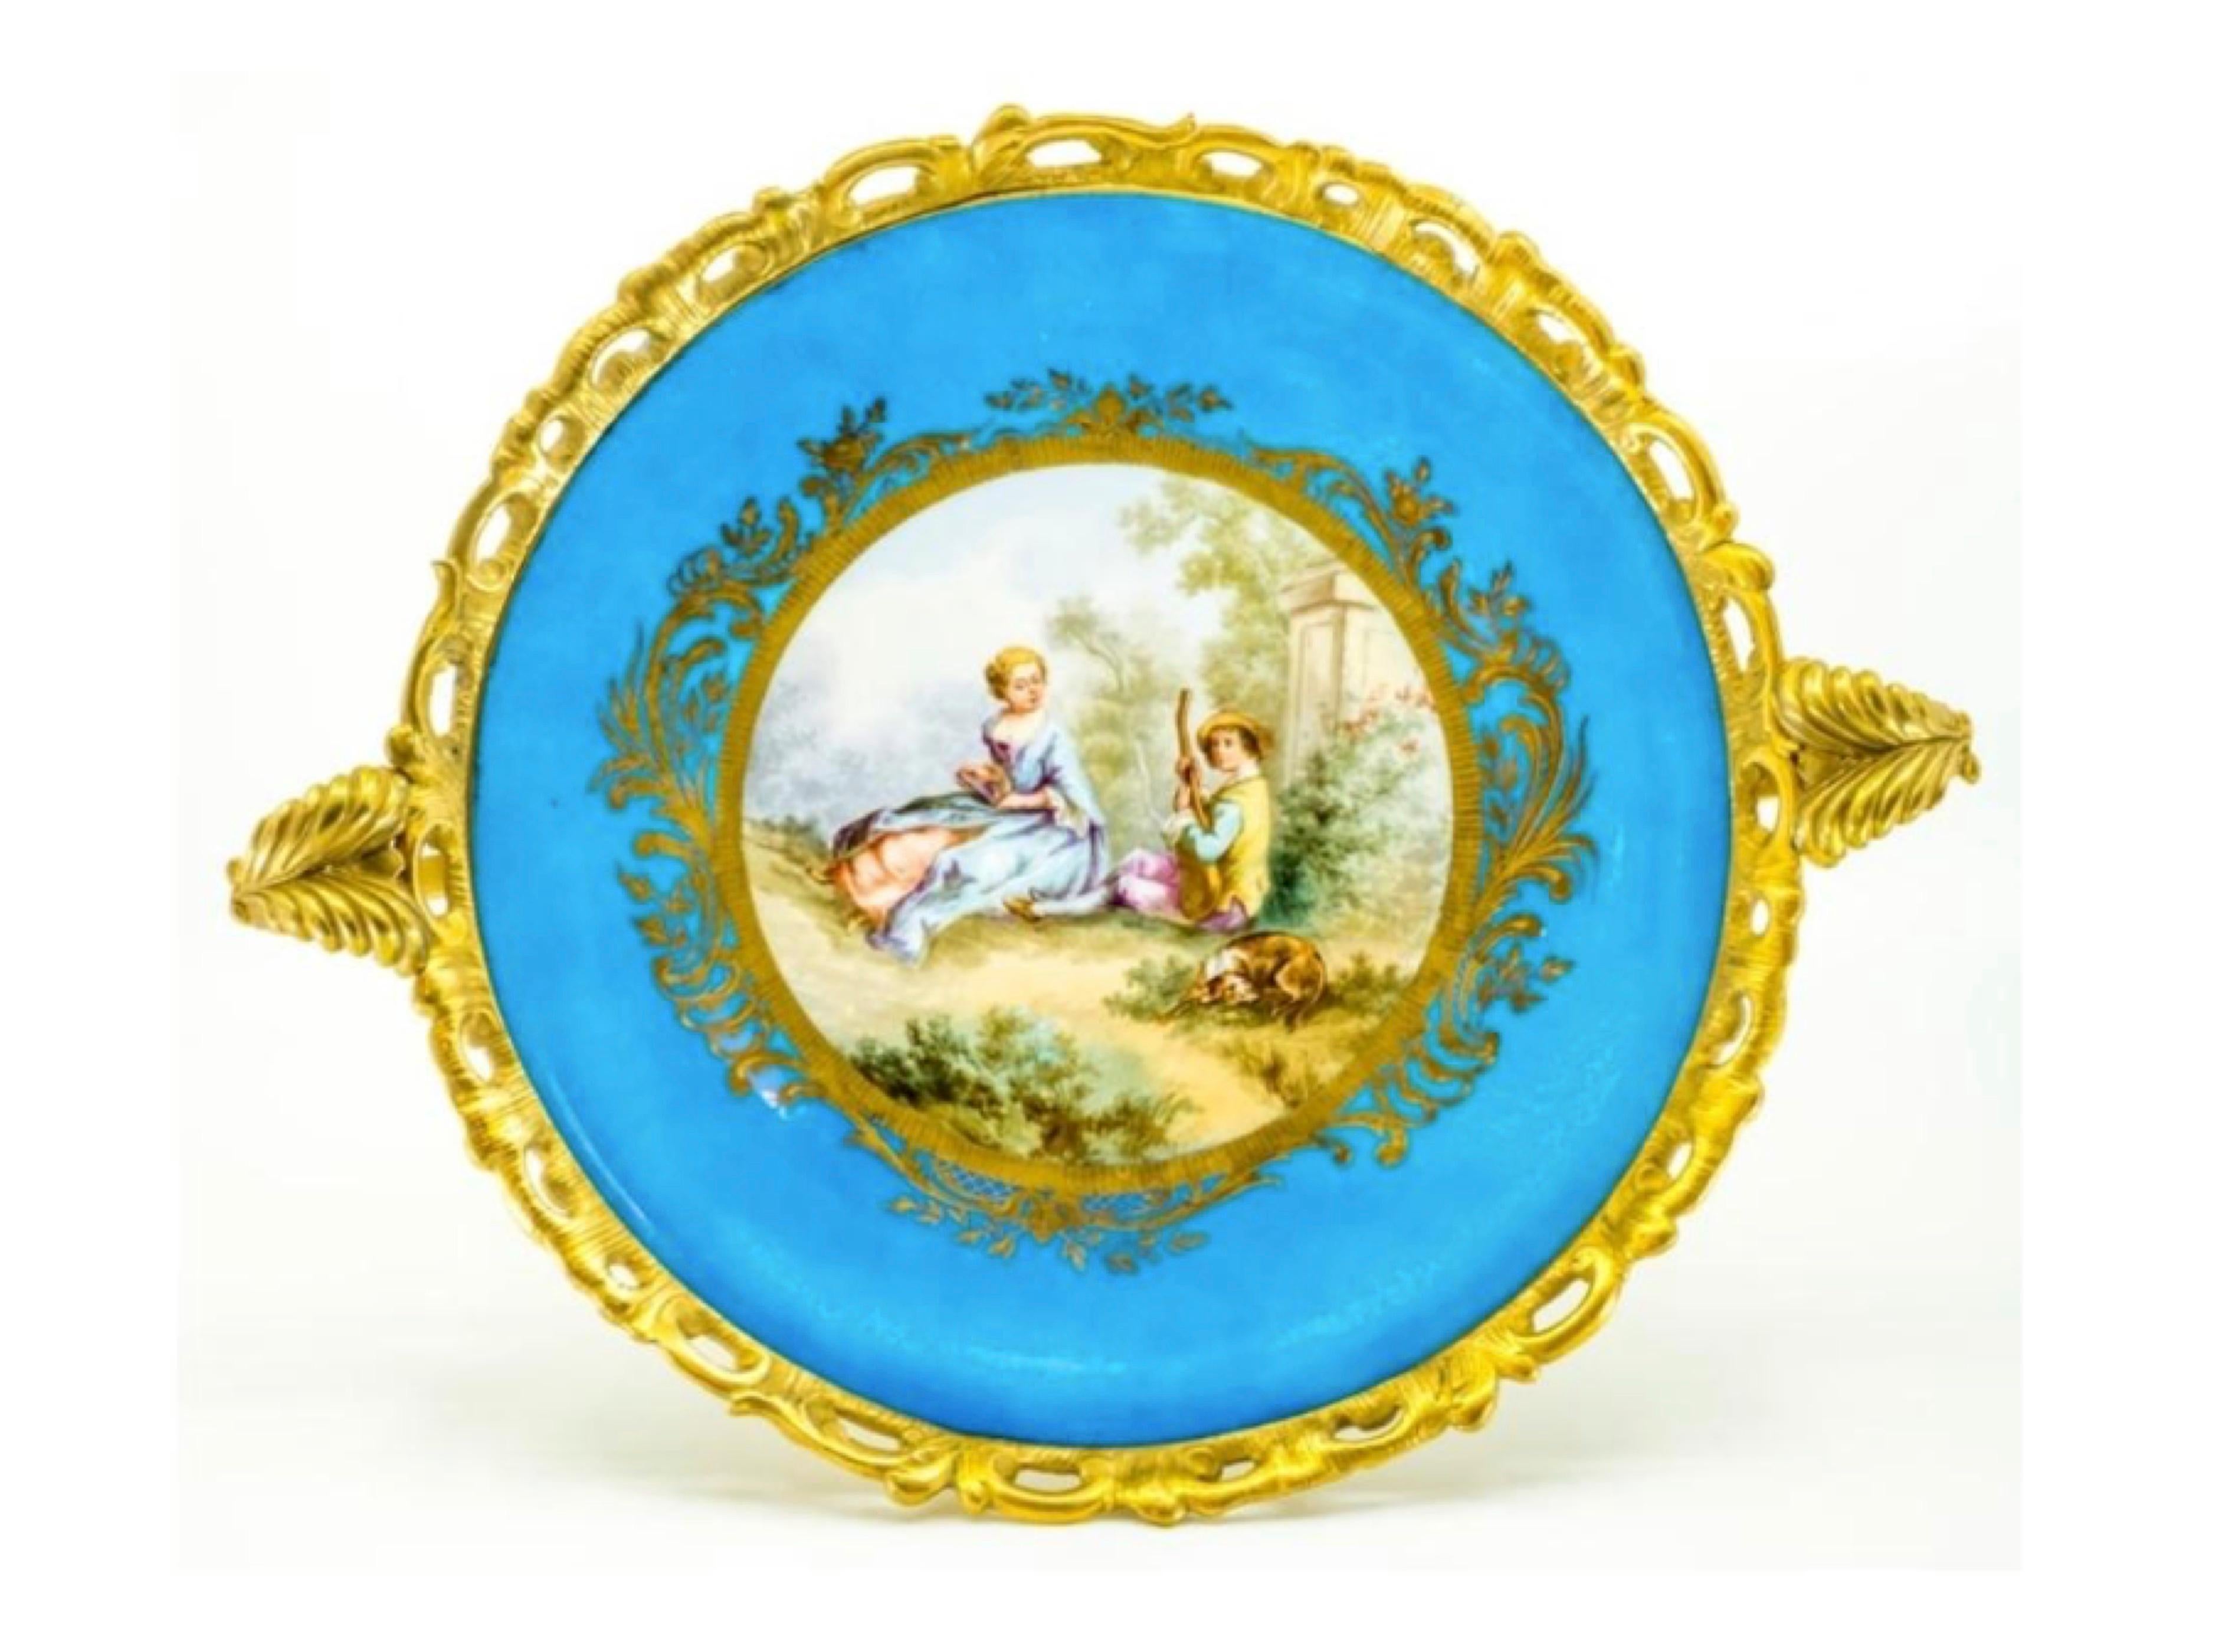 Cette assiette en porcelaine de style Sèvres français du XIXe siècle est sertie dans une monture en bronze doré, ornée d'une base, d'un rebord et de deux poignées de style rococo avec des feuillages stylisés et des volutes en forme de C.
Le centre